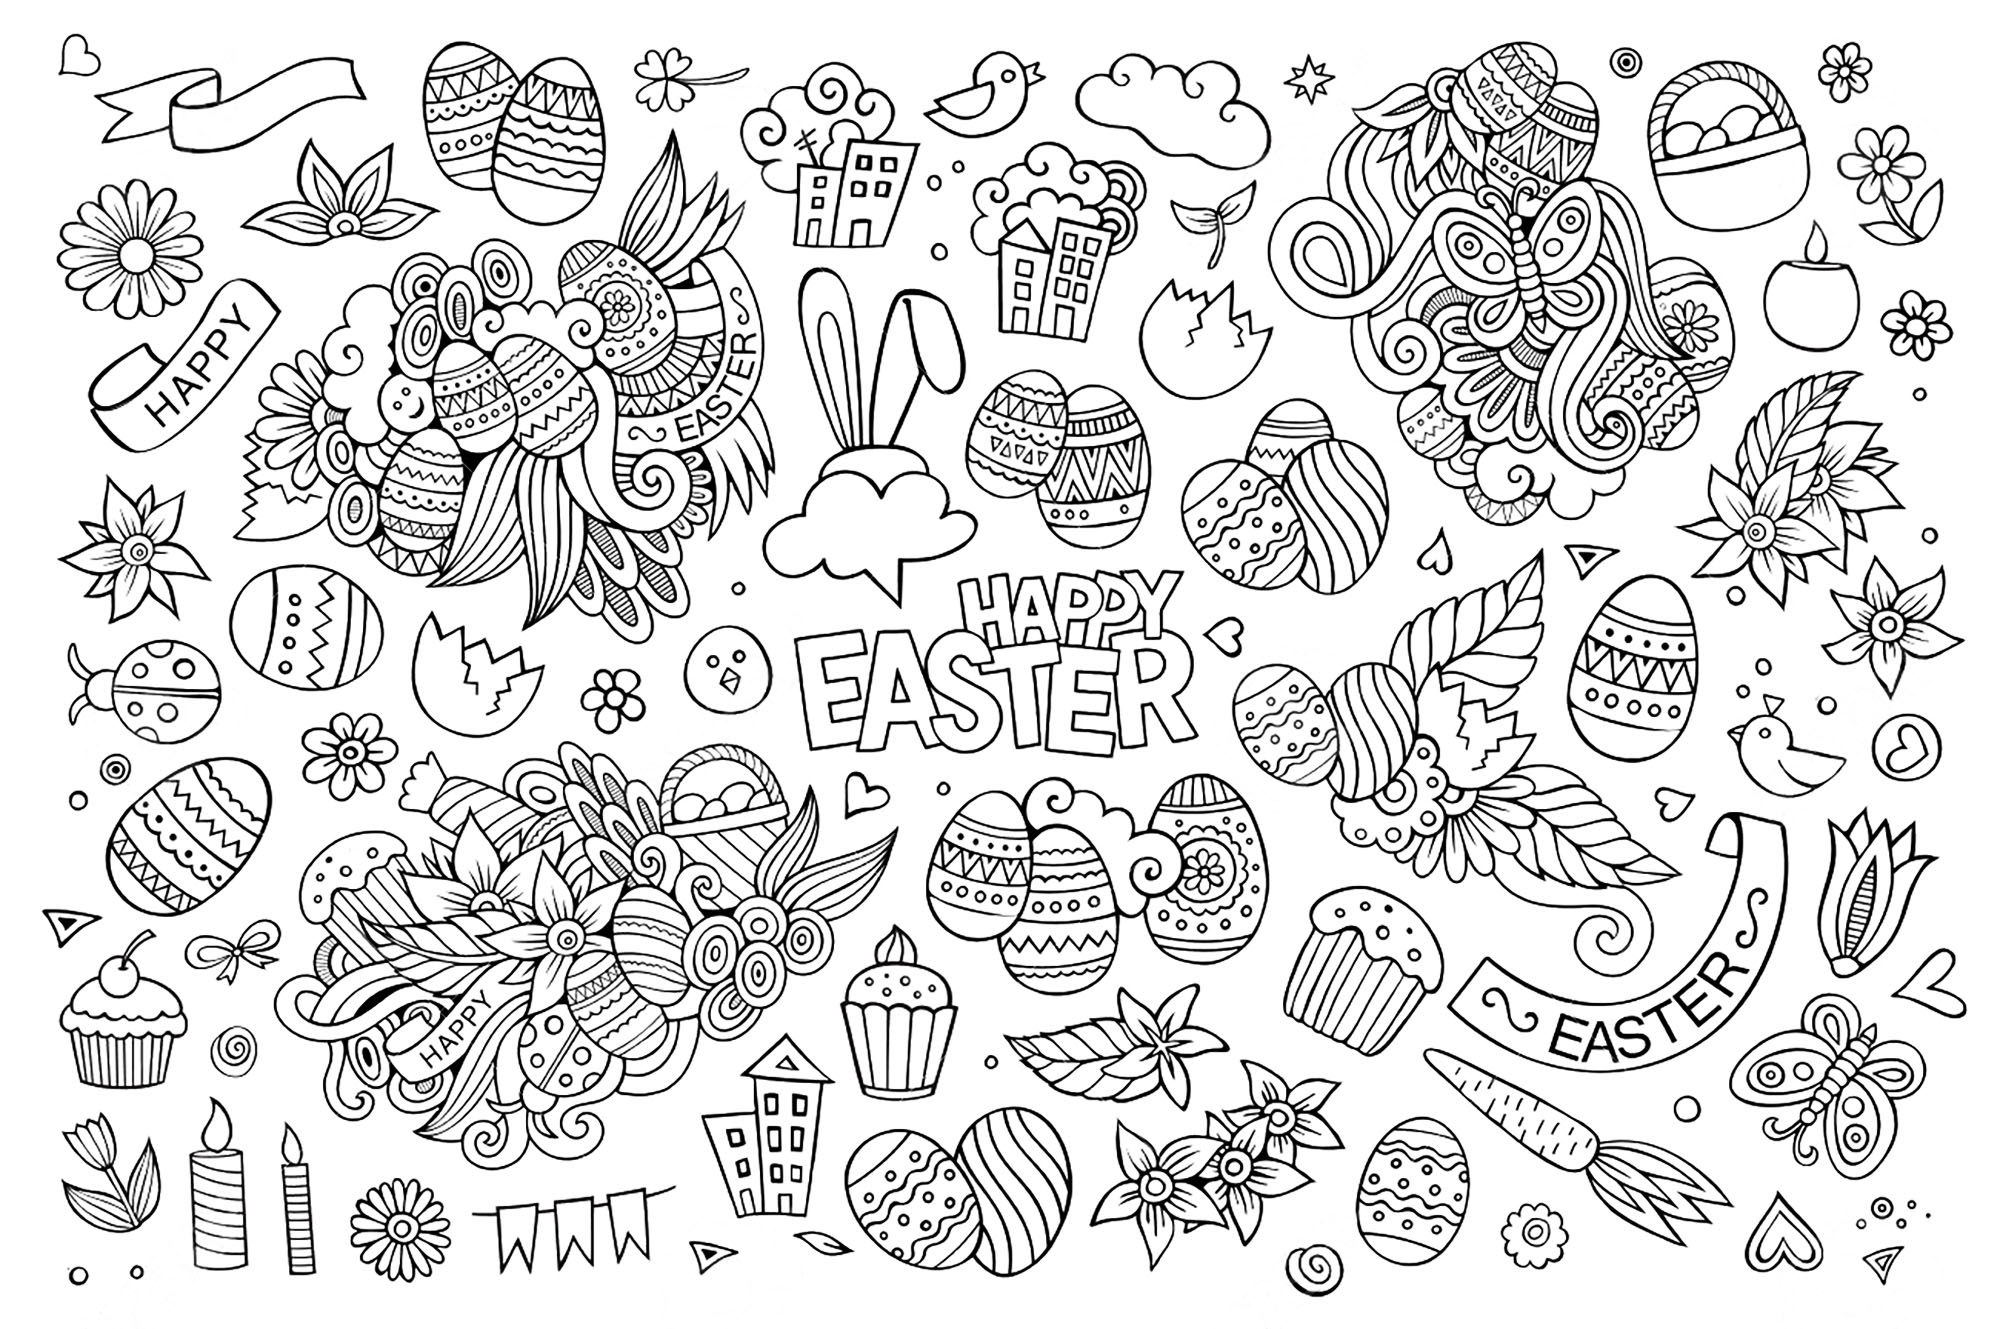 Disegni da colorare per adulti : Pasqua - 6, Artista : Olga Kostenko   Fonte : 123rf